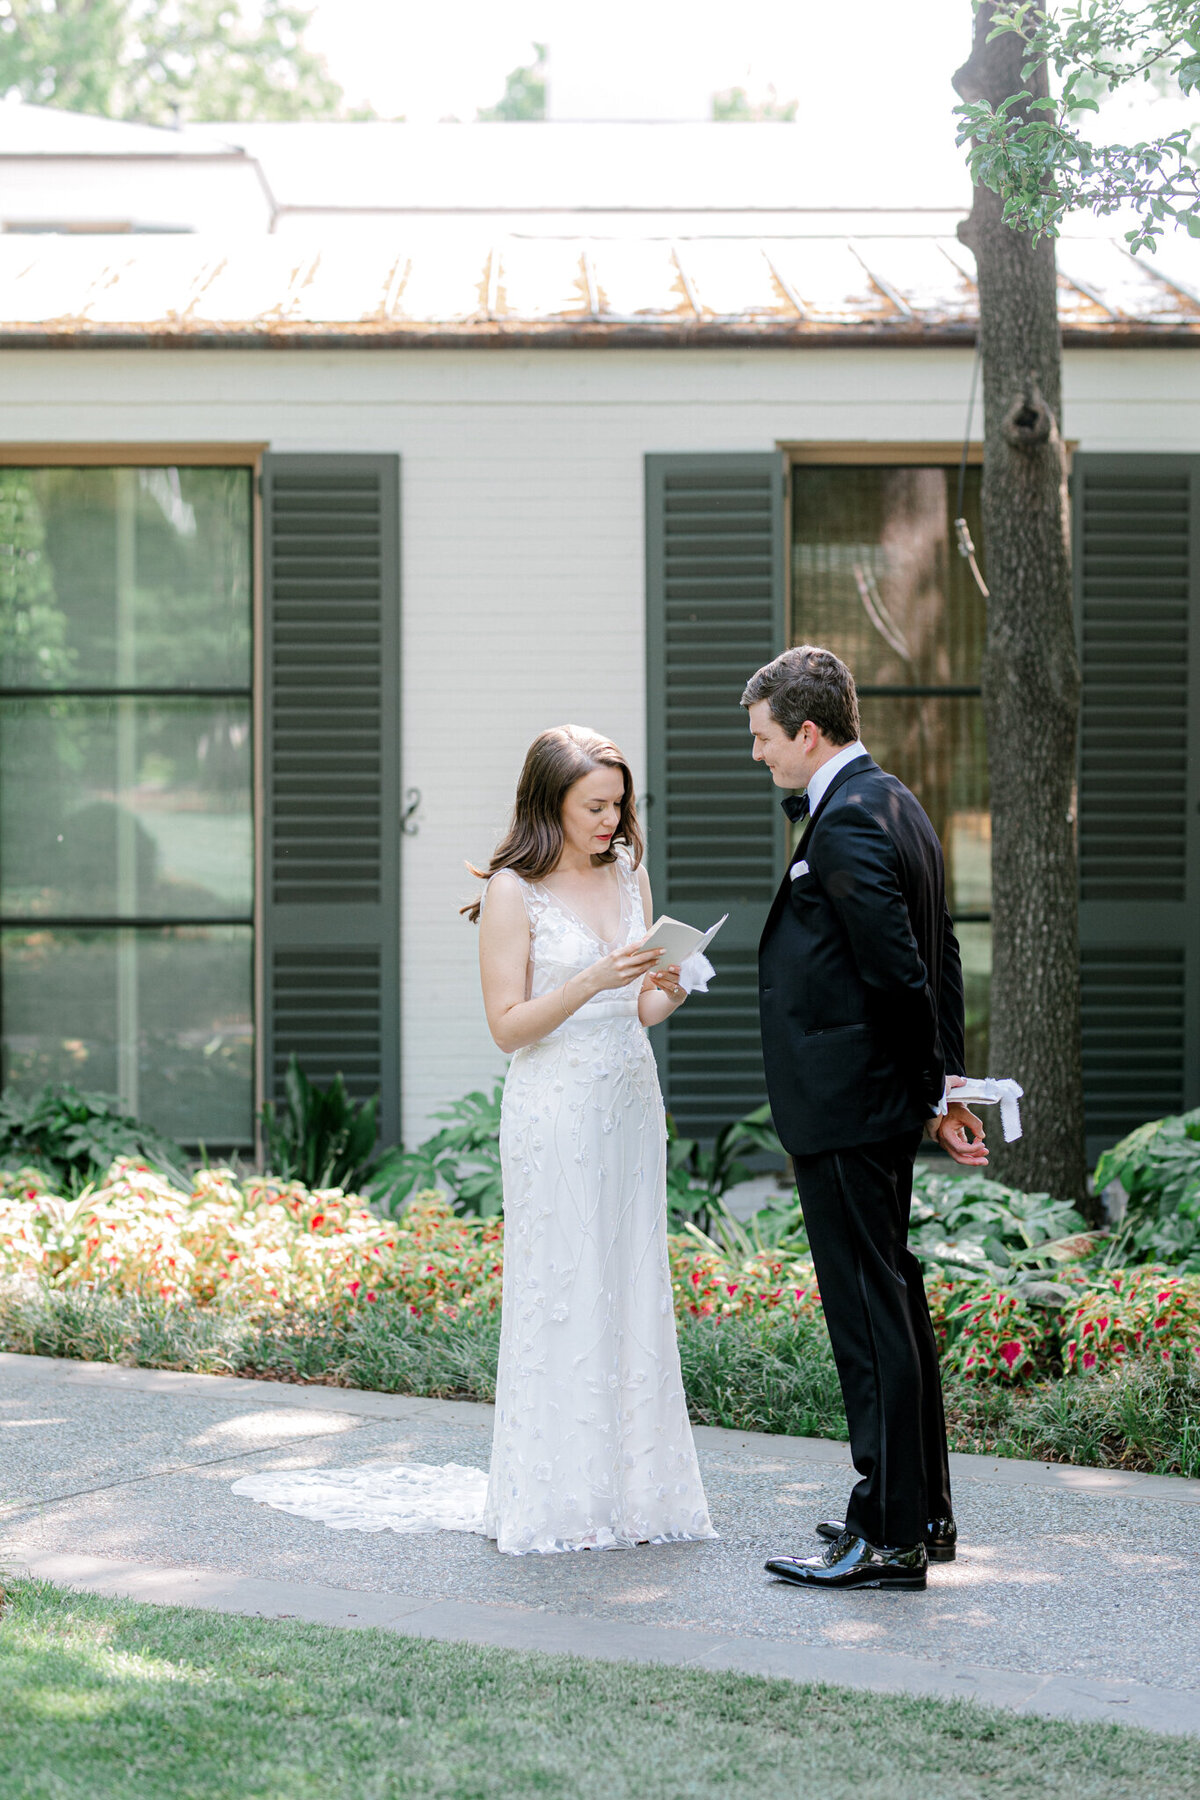 Gena & Matt's Wedding at the Dallas Arboretum | Dallas Wedding Photographer | Sami Kathryn Photography-73